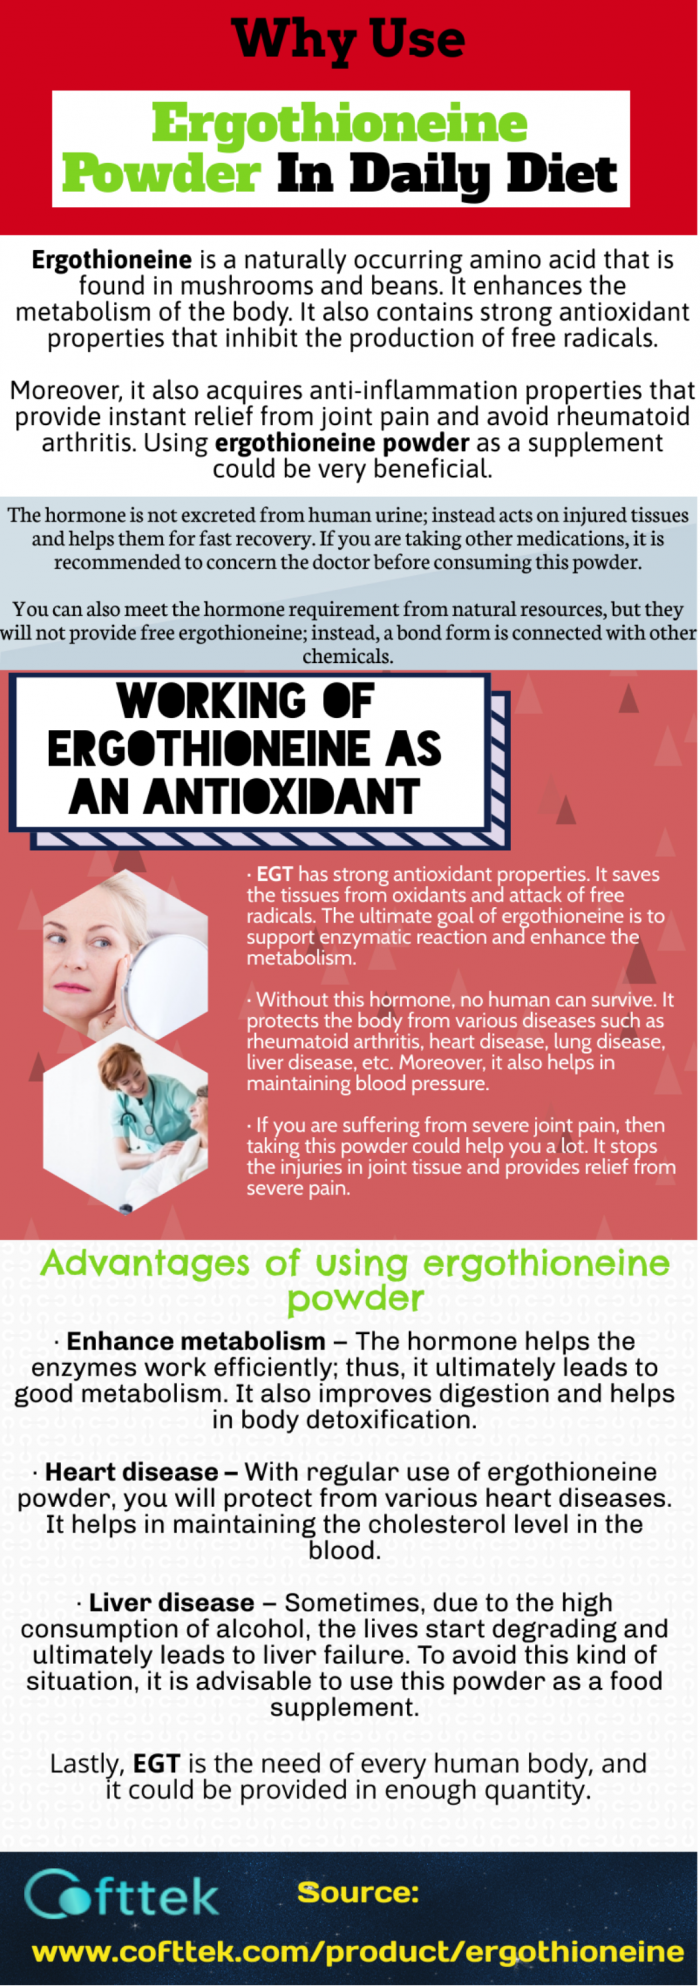 Advantages of using ergothioneine powder